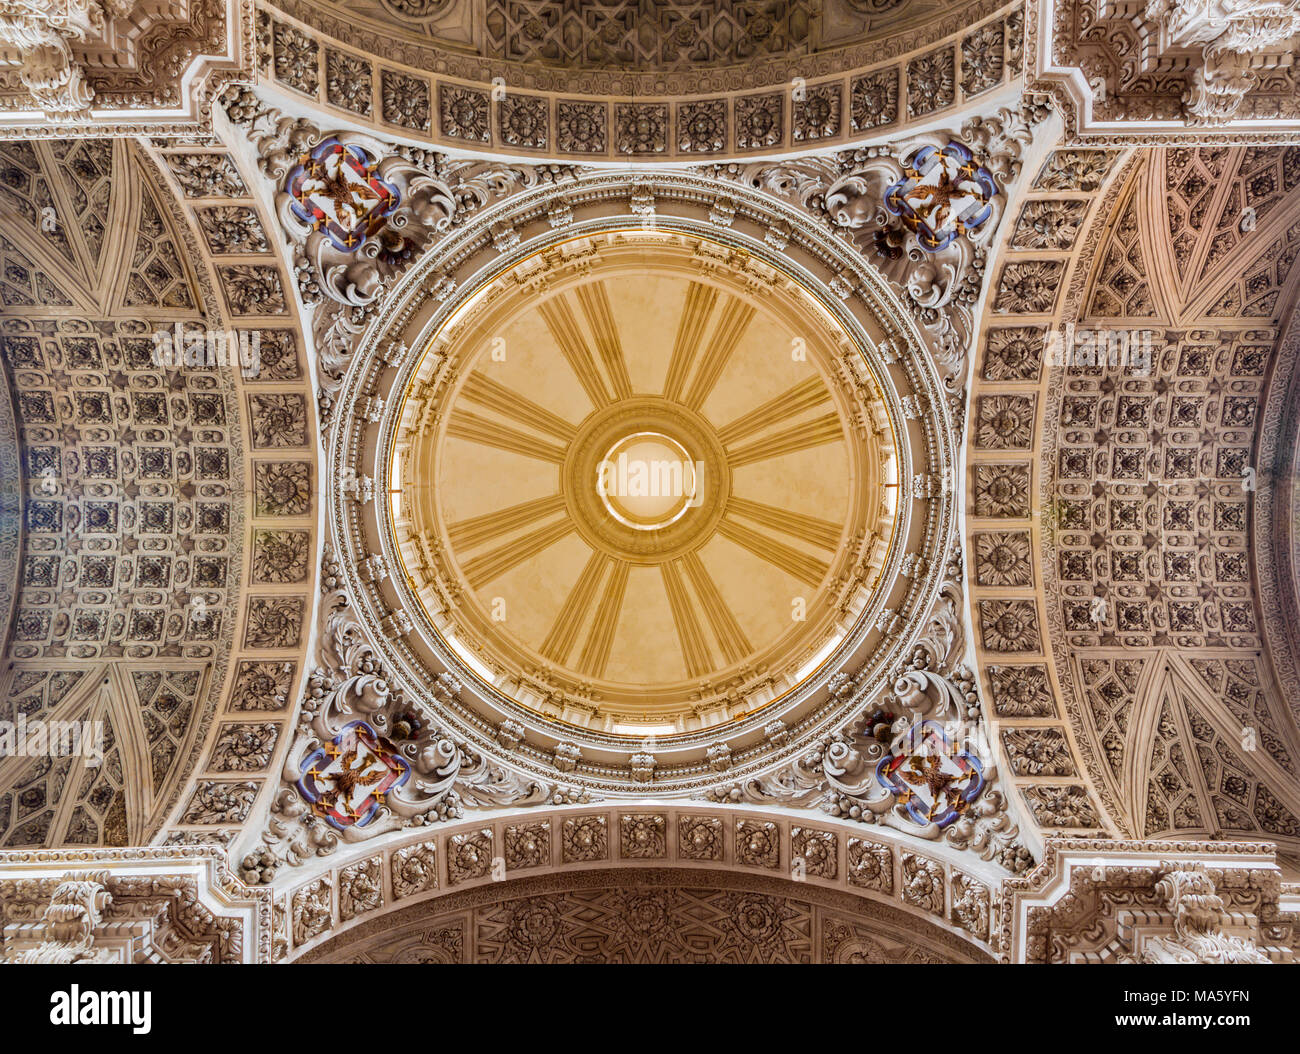 ZARAGOZA, Spanien - 3. MÄRZ 2018: die Kuppel der Kirche Iglesia de Santiago el Mayor - St James der Große (1860). Stockfoto